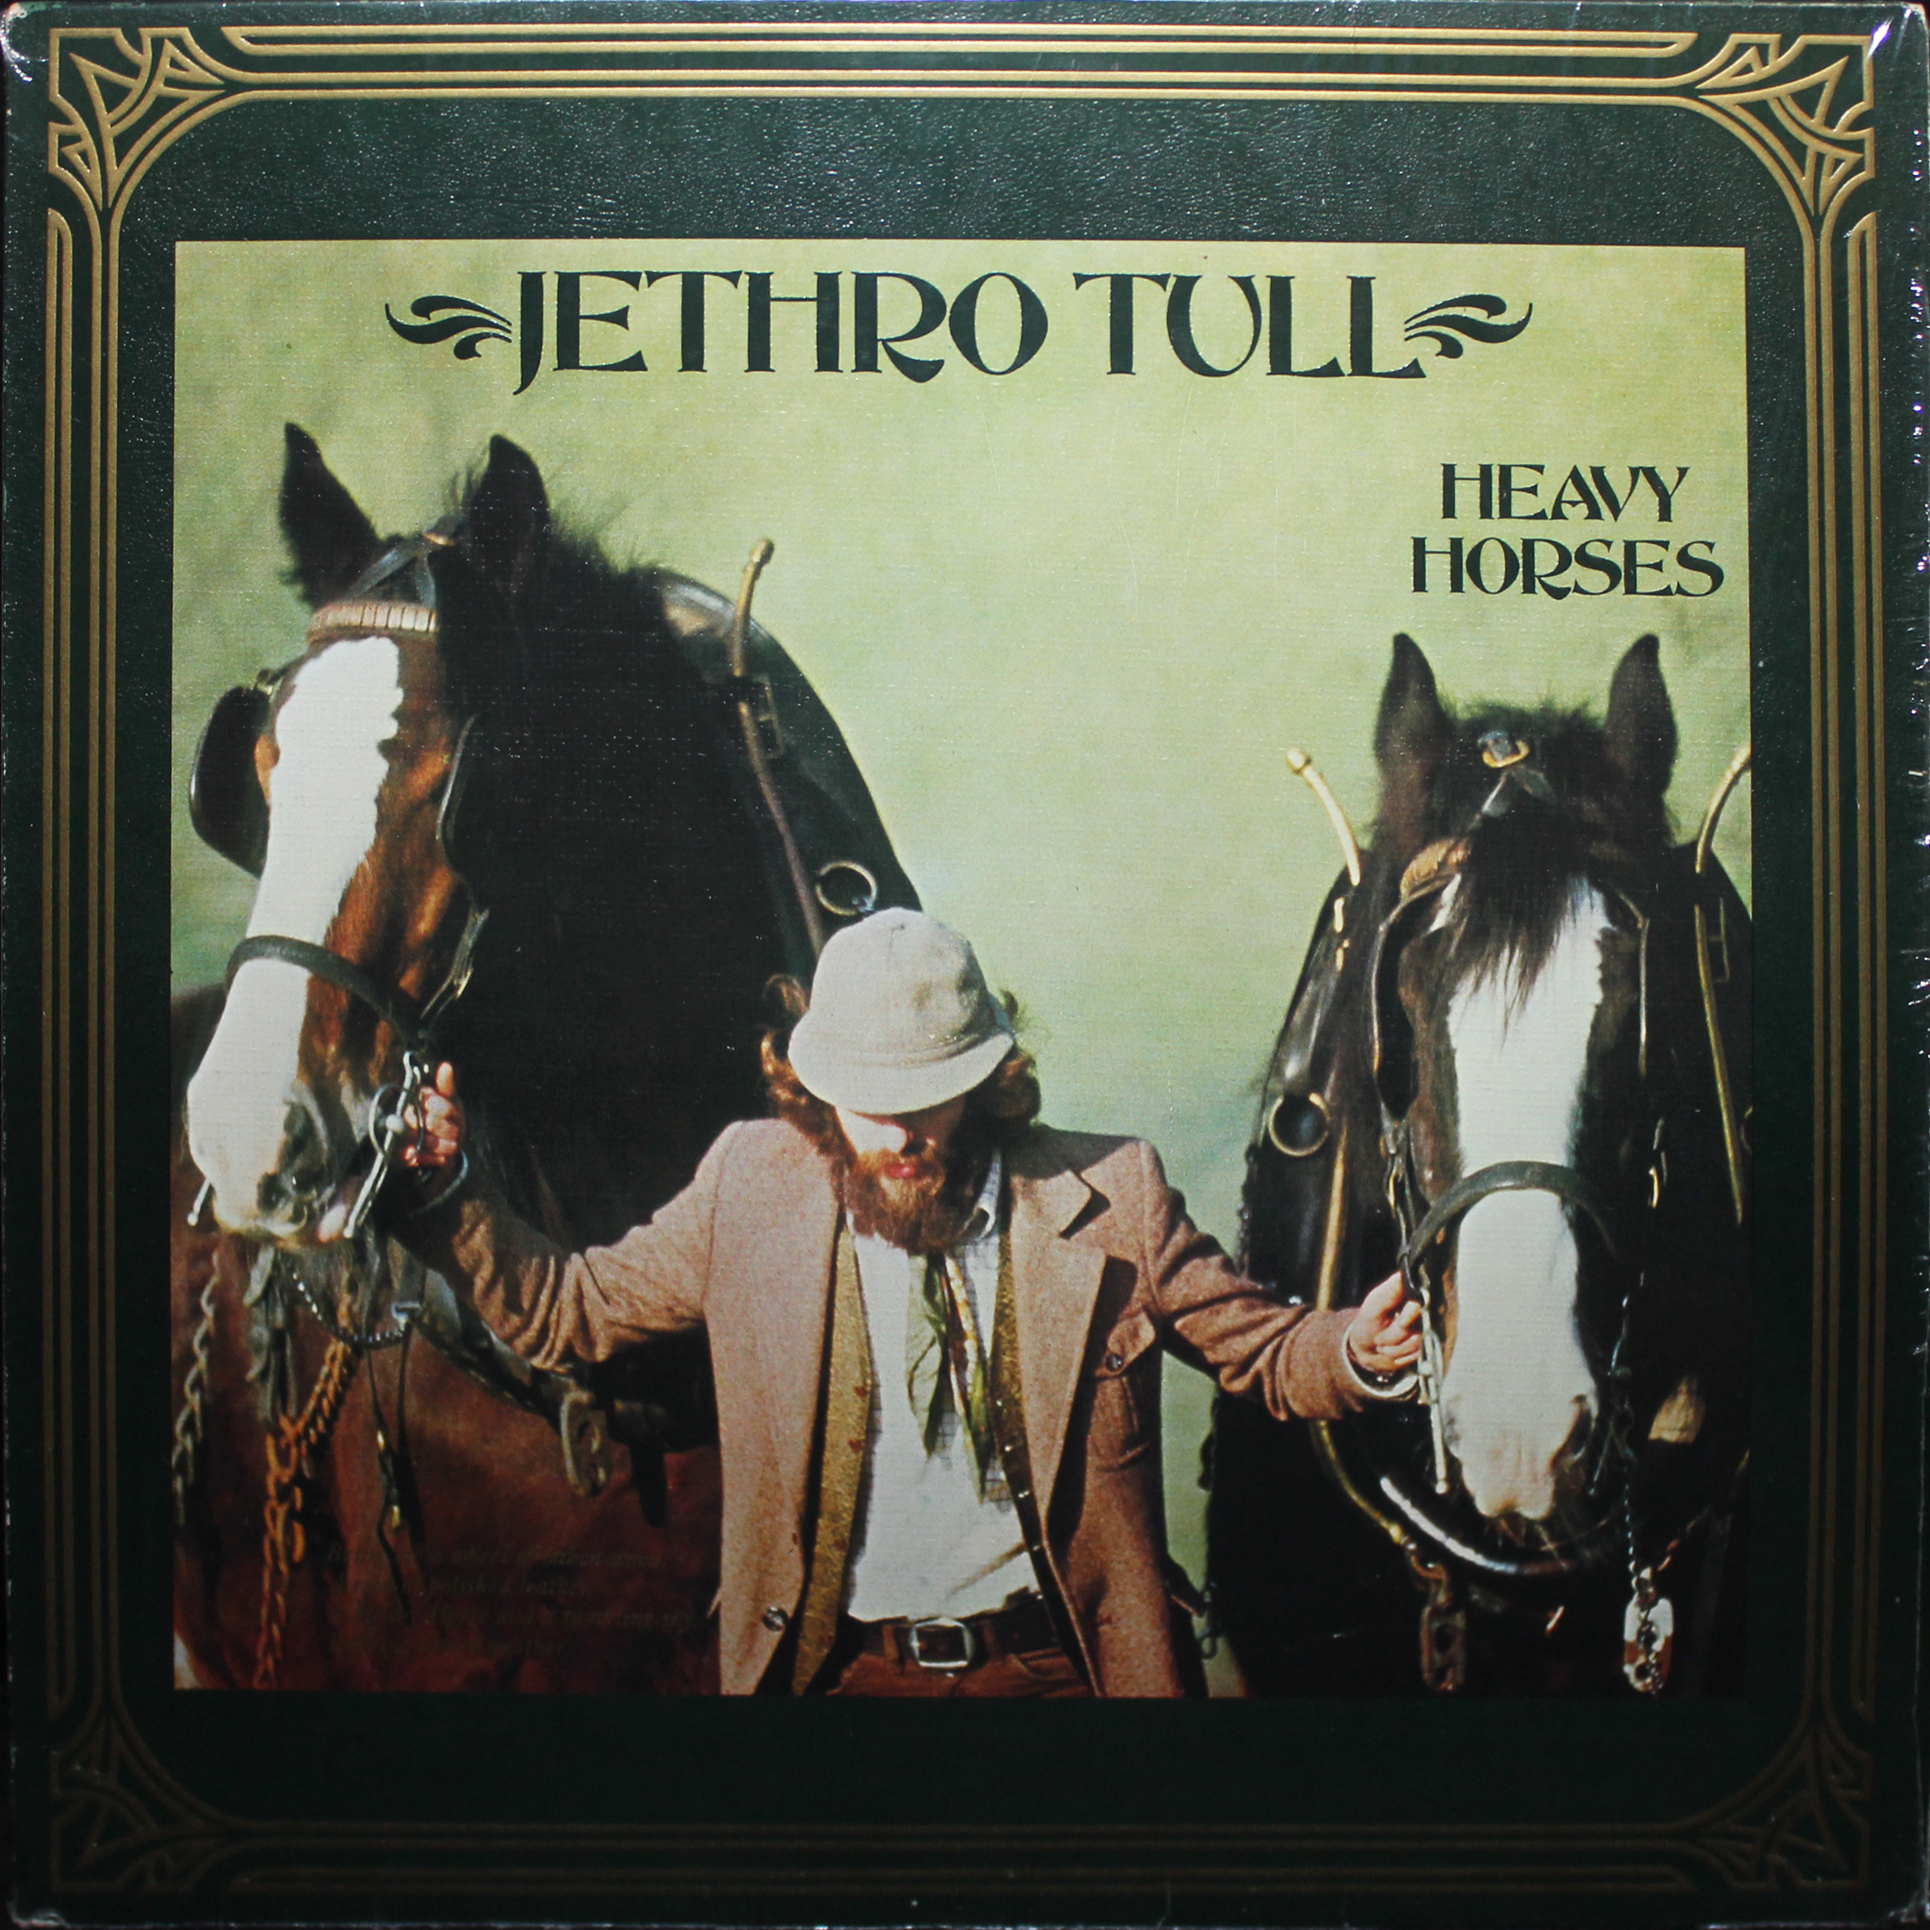 Heavy horses. Jethro Tull – Heavy Horses. Jethro Tull Heavy Horses Cover. Horses диск РС.